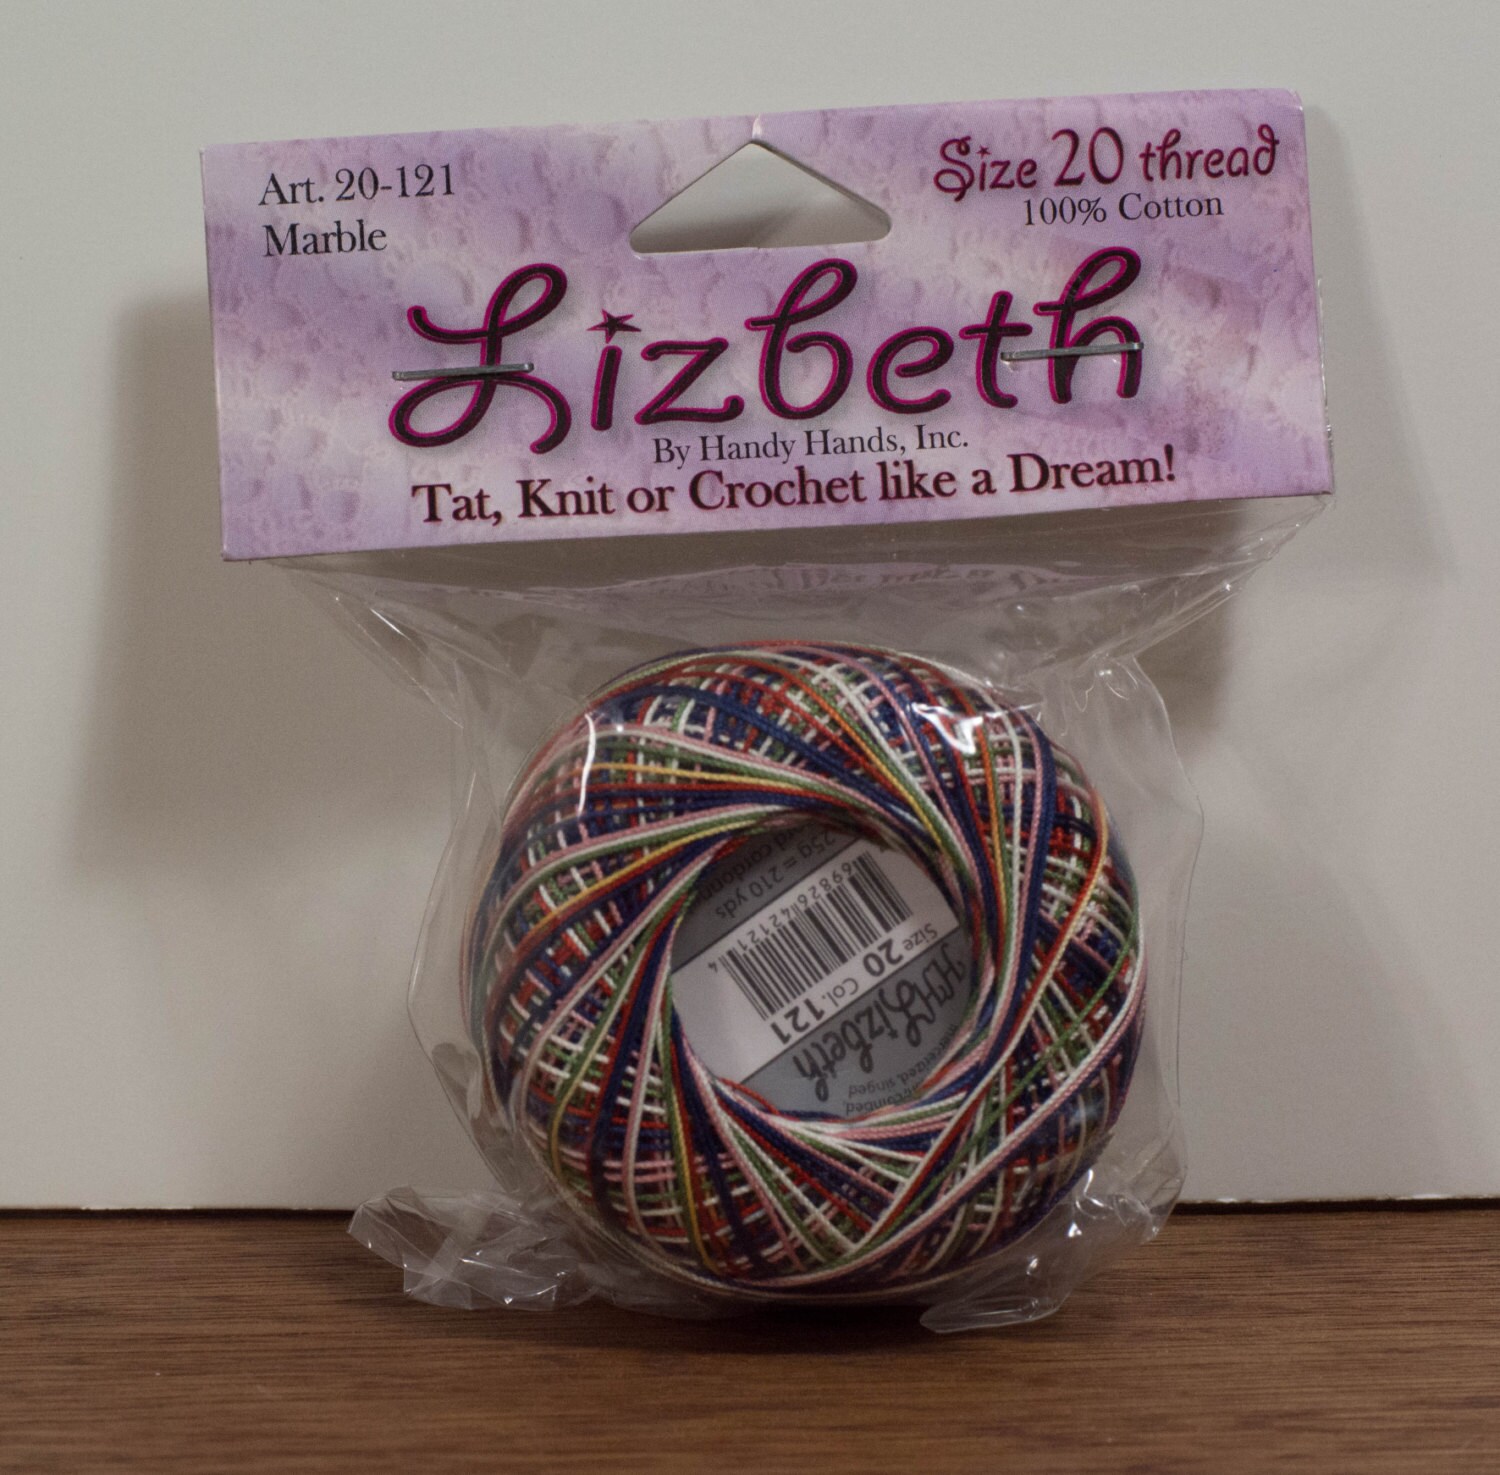 Handy Hands Lizbeth Size 20 100% Cotton Thread Marble 20-121